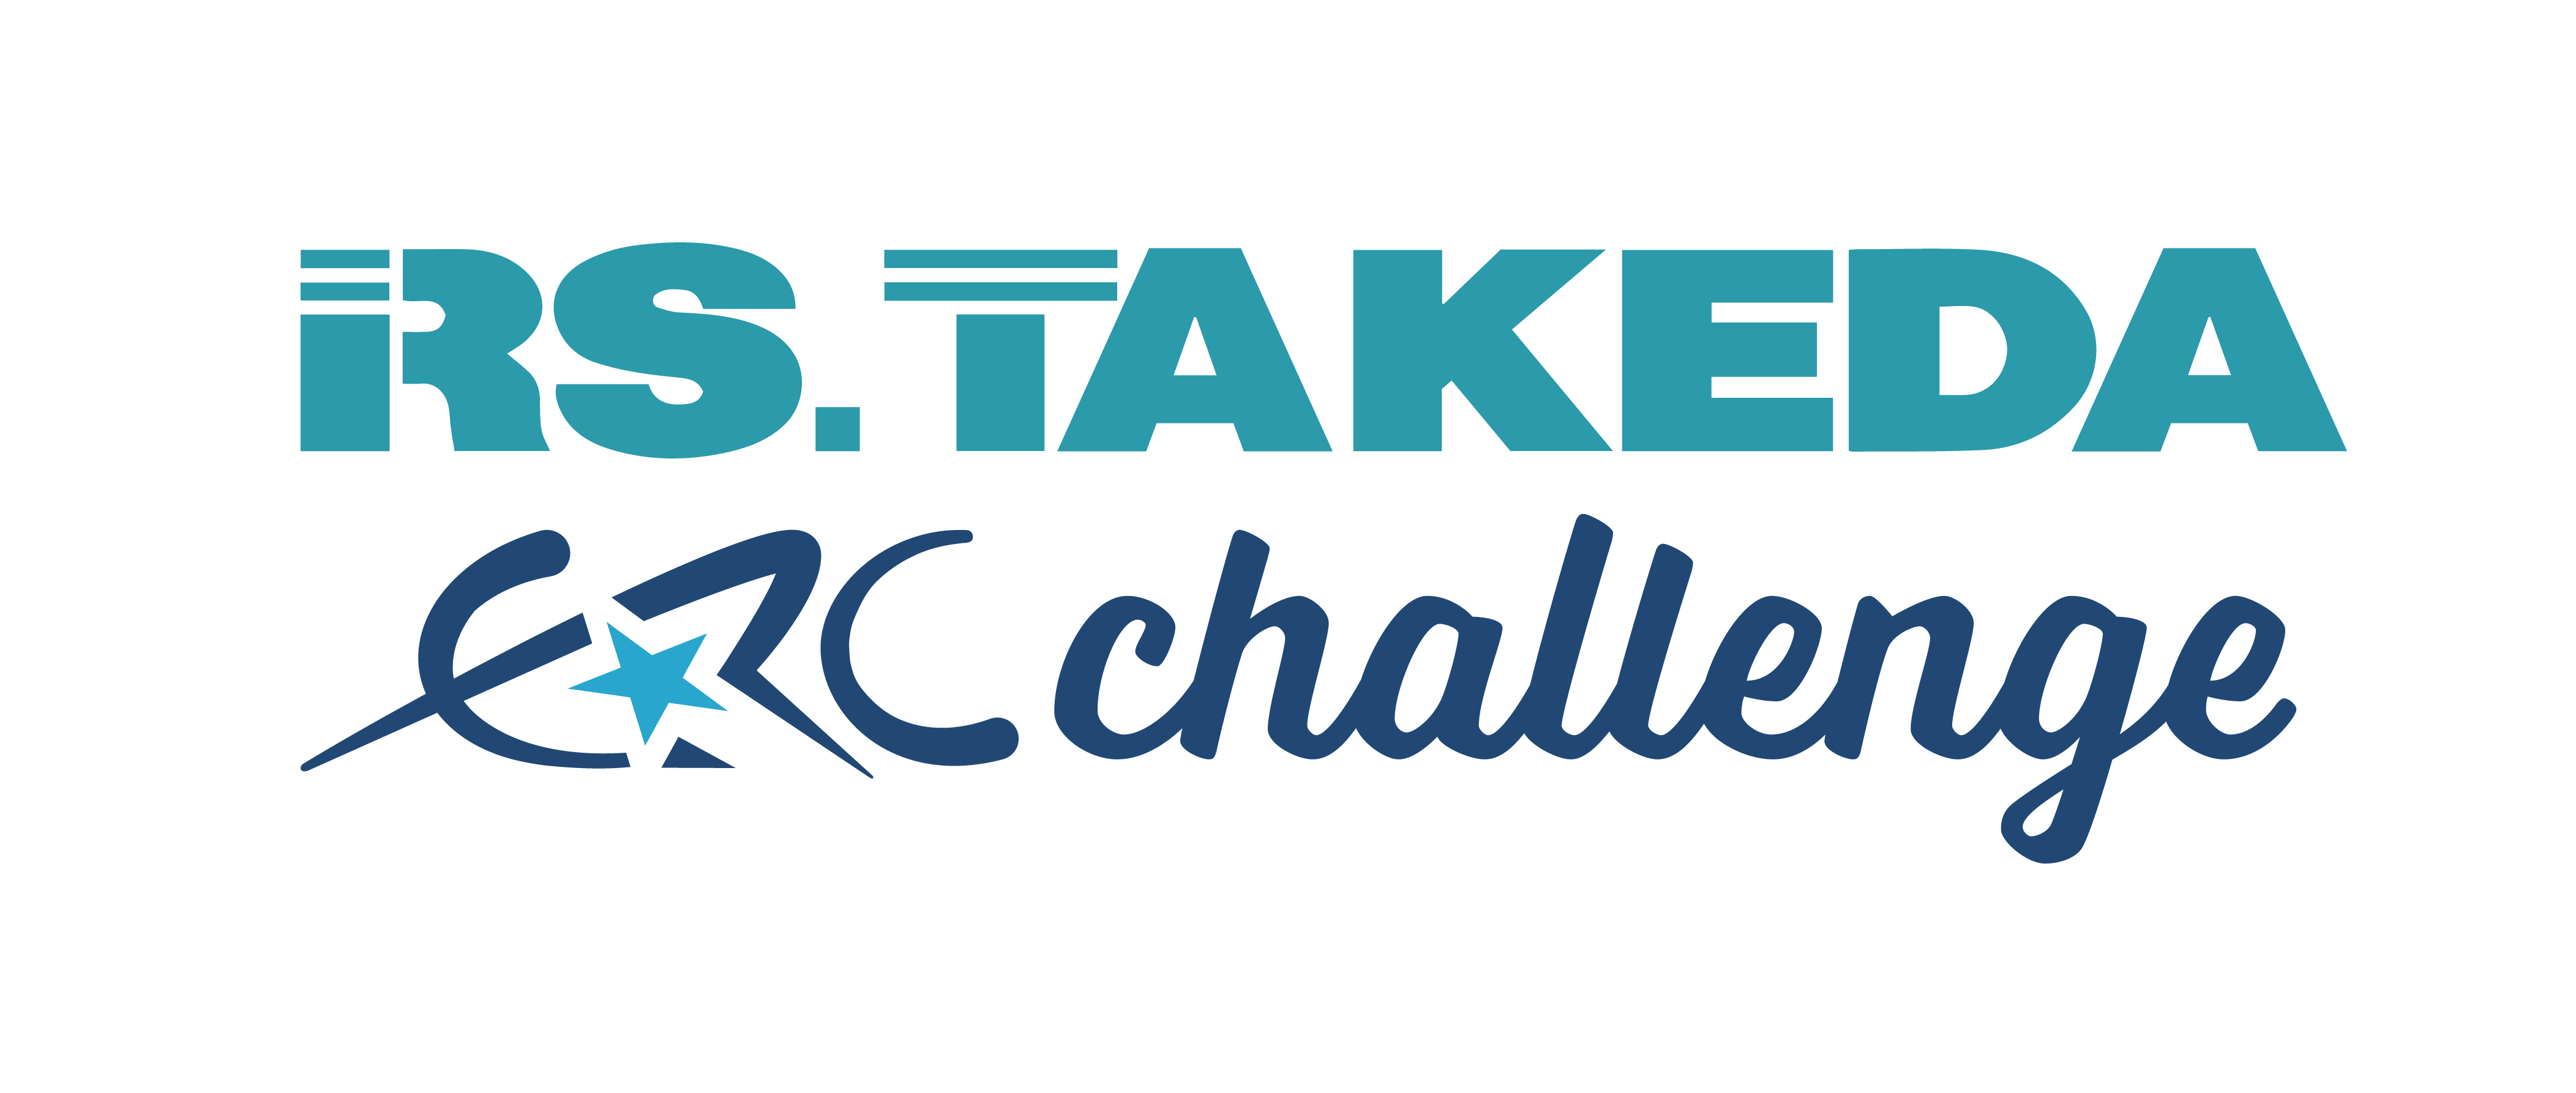 ERC_Challenge